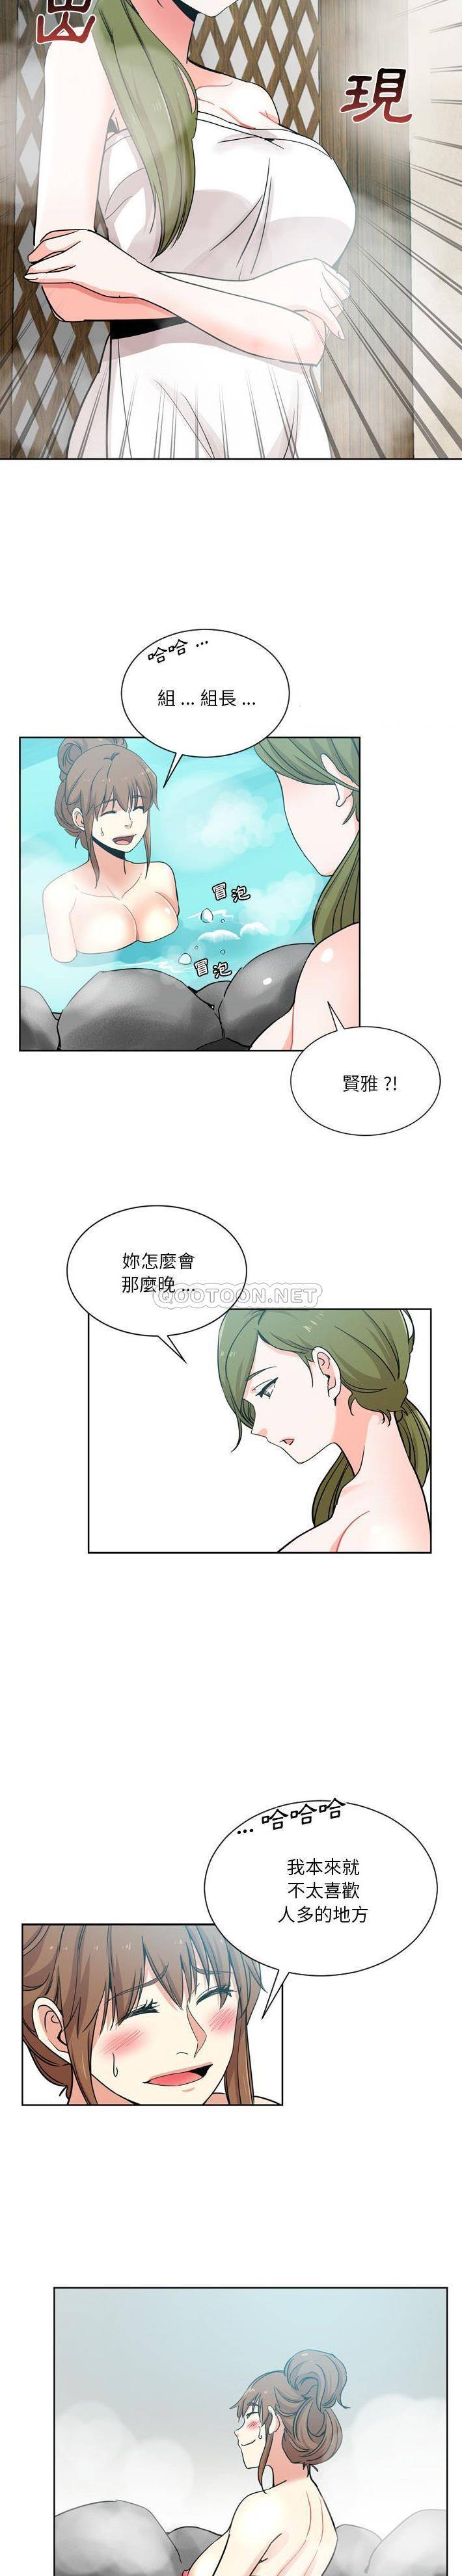 韩国污漫画 危險純友誼 第17话 15